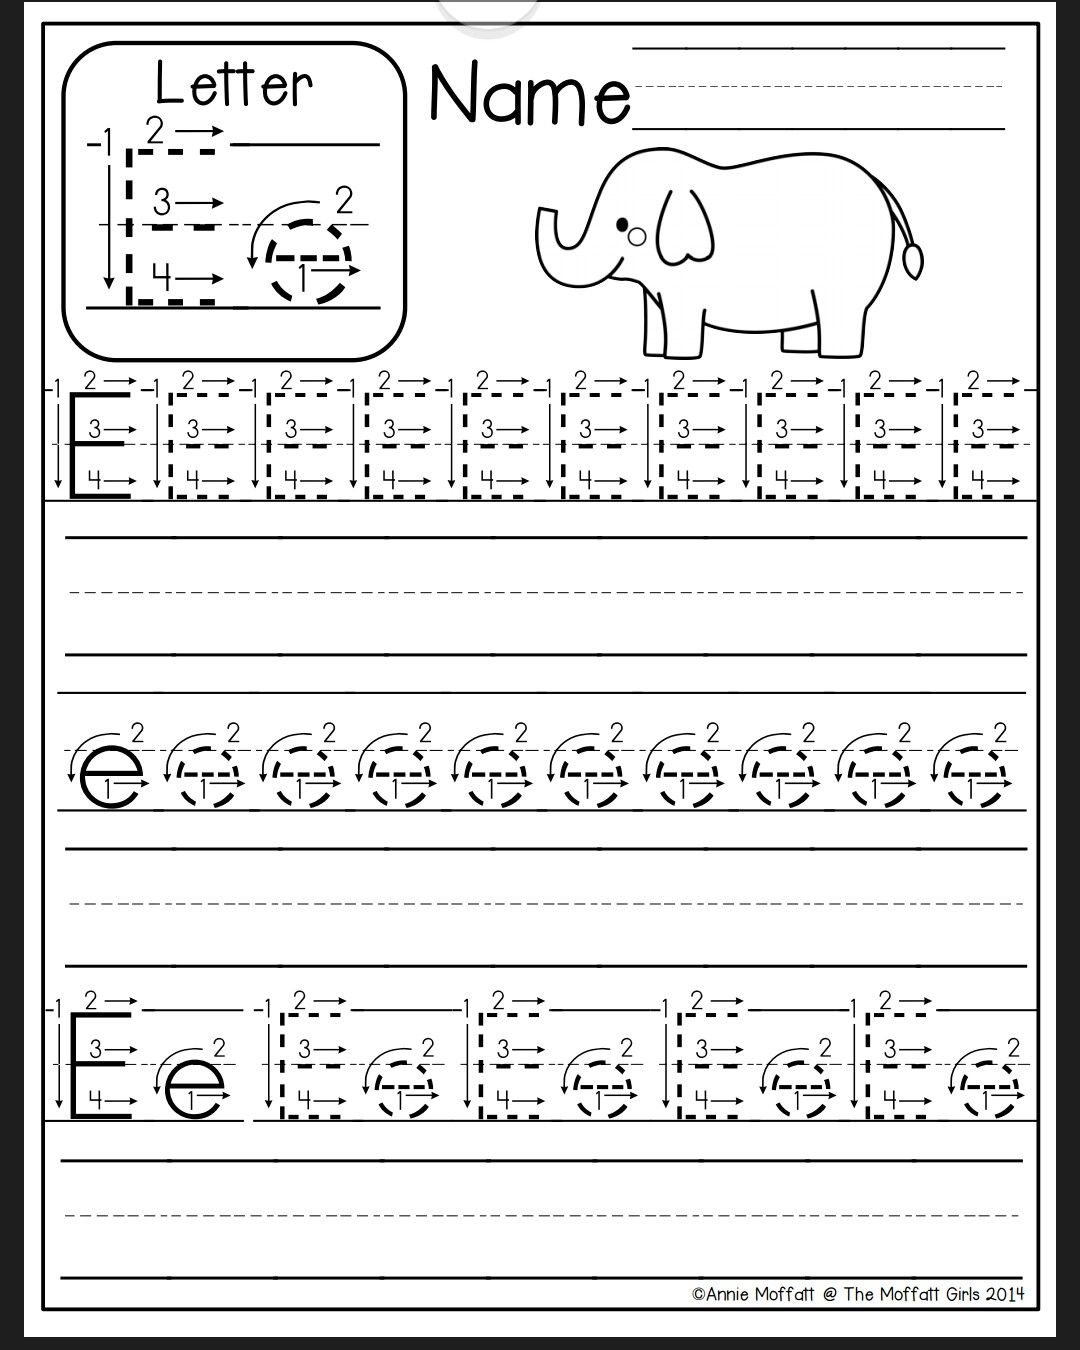 Letter E Worksheet | Preschool Writing, Preschool Worksheets in Alphabet Homework Worksheets